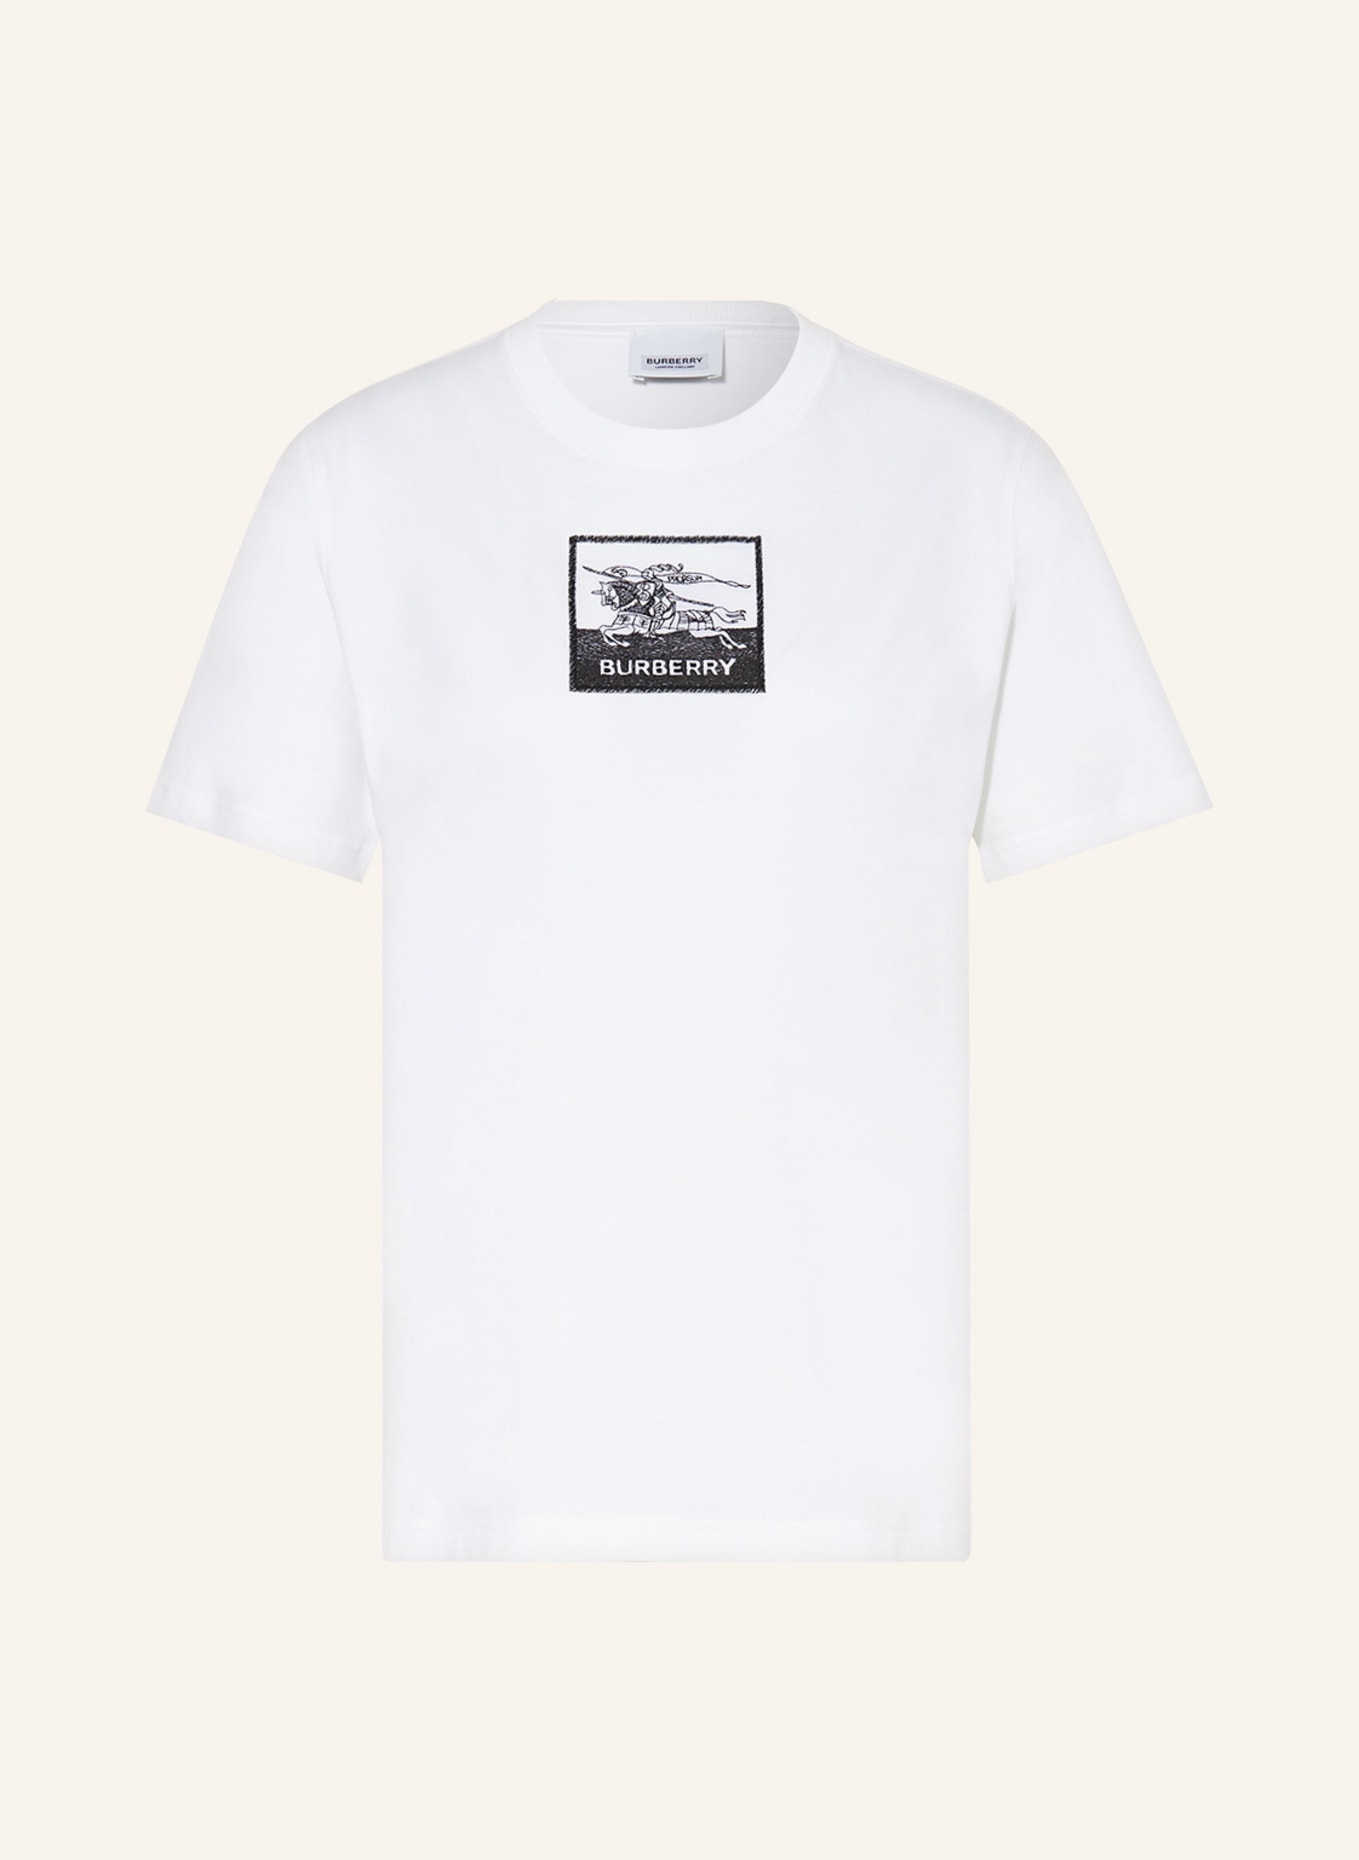 BURBERRY T-Shirt MARGOT, Farbe: WEISS (Bild 1)